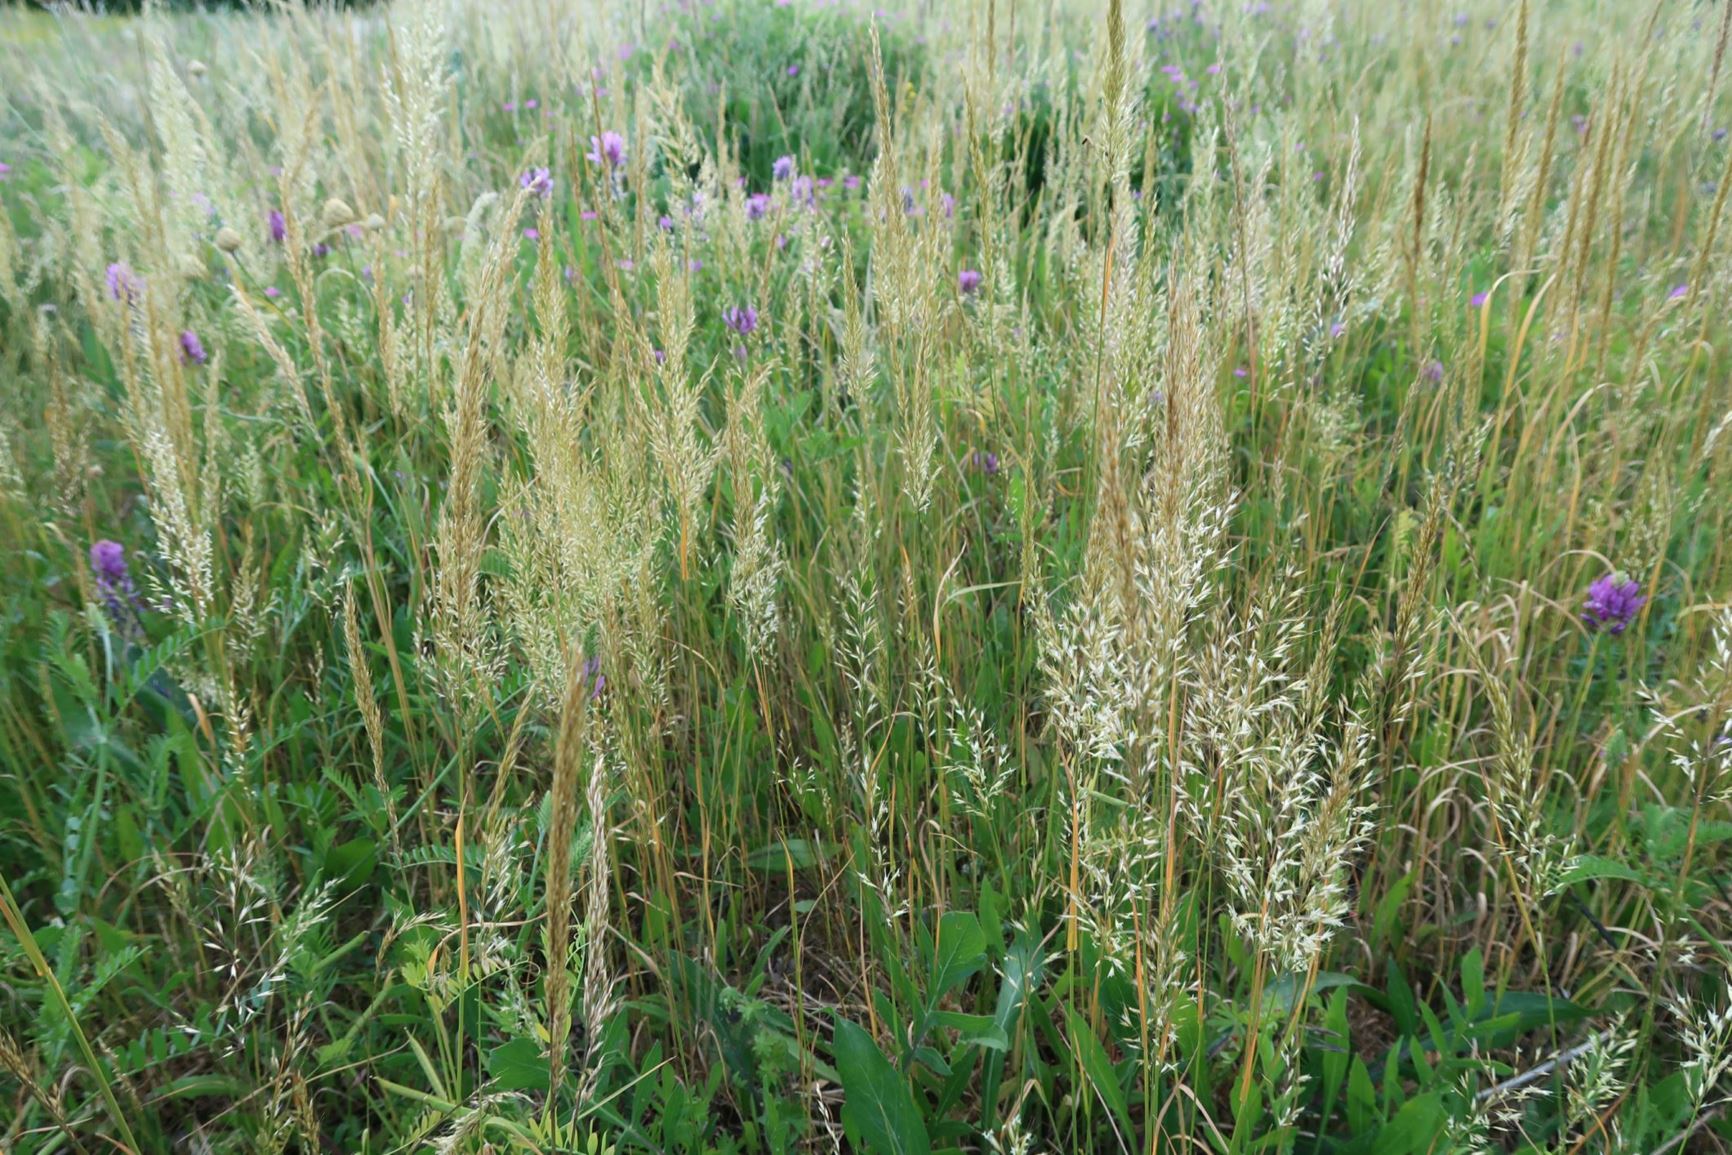 Trisetum flavescens - Wiesen-Goldhafer, yellow oatgrass